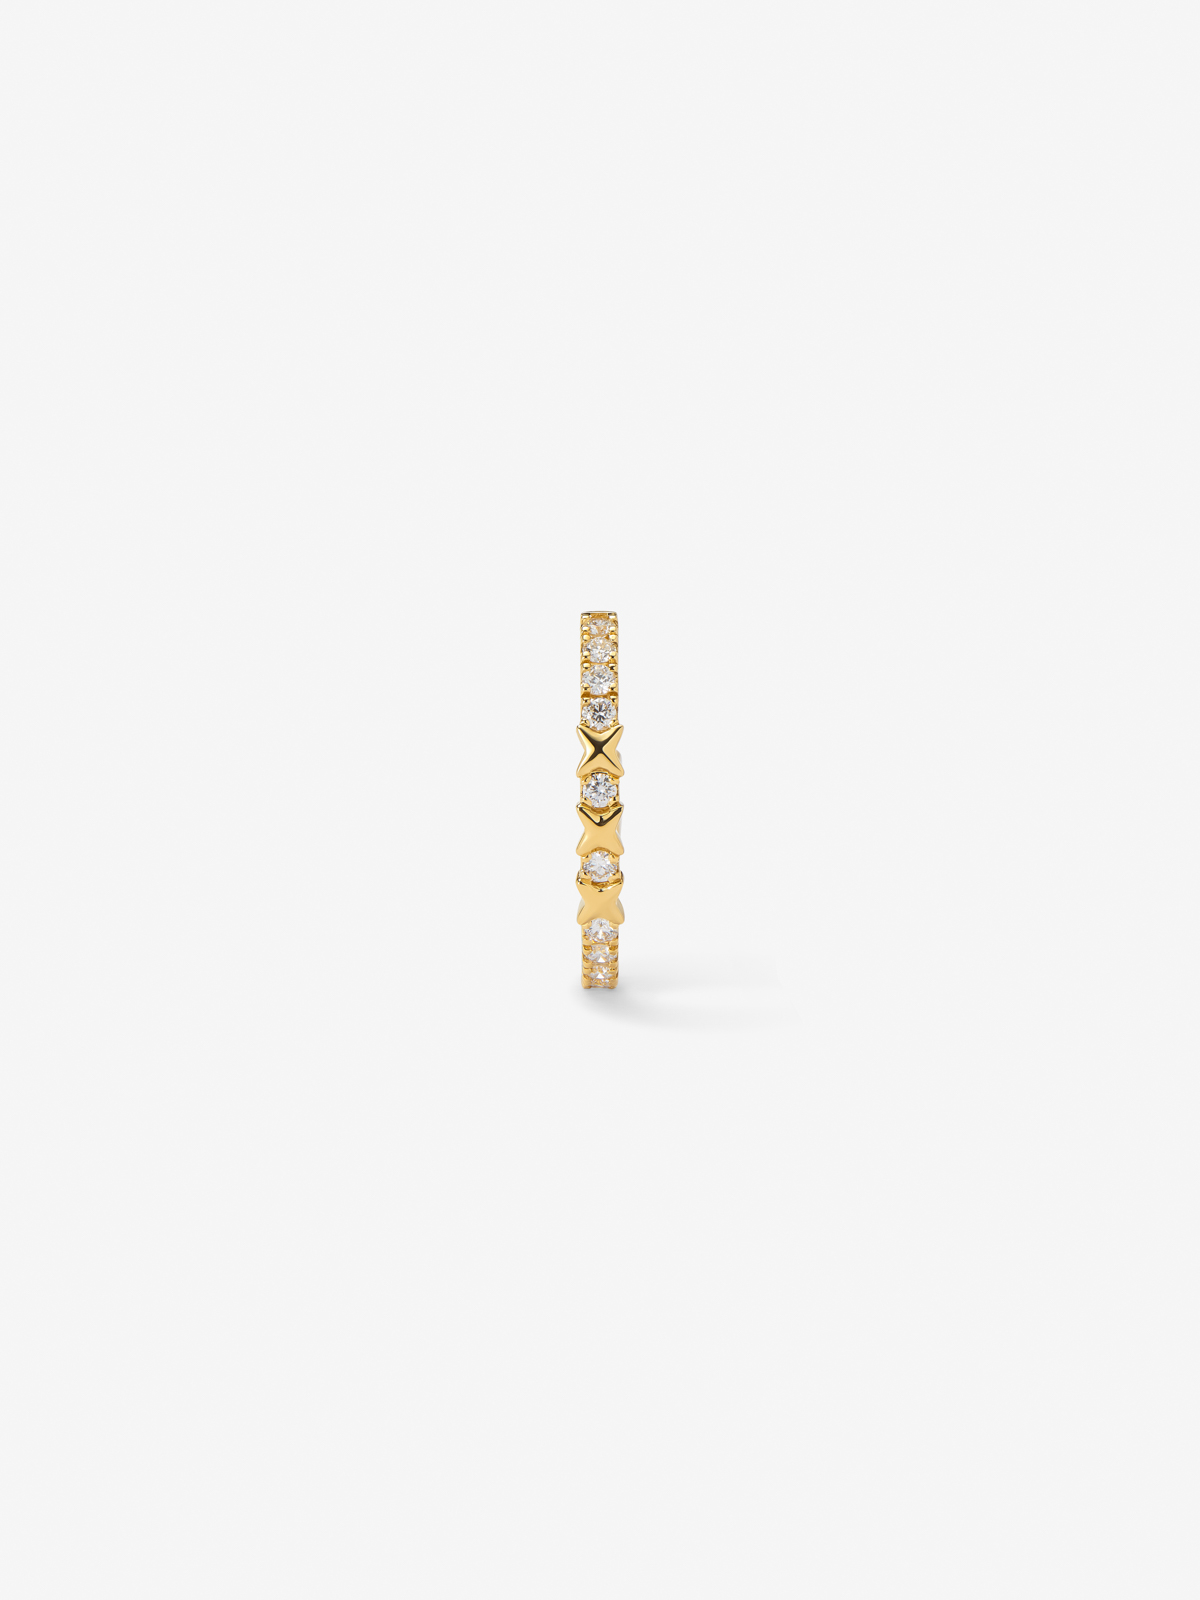 Pendiente individual de aro de oro amarillo de 18K con 11 diamantes en talla brillante con un total de 0,14 cts